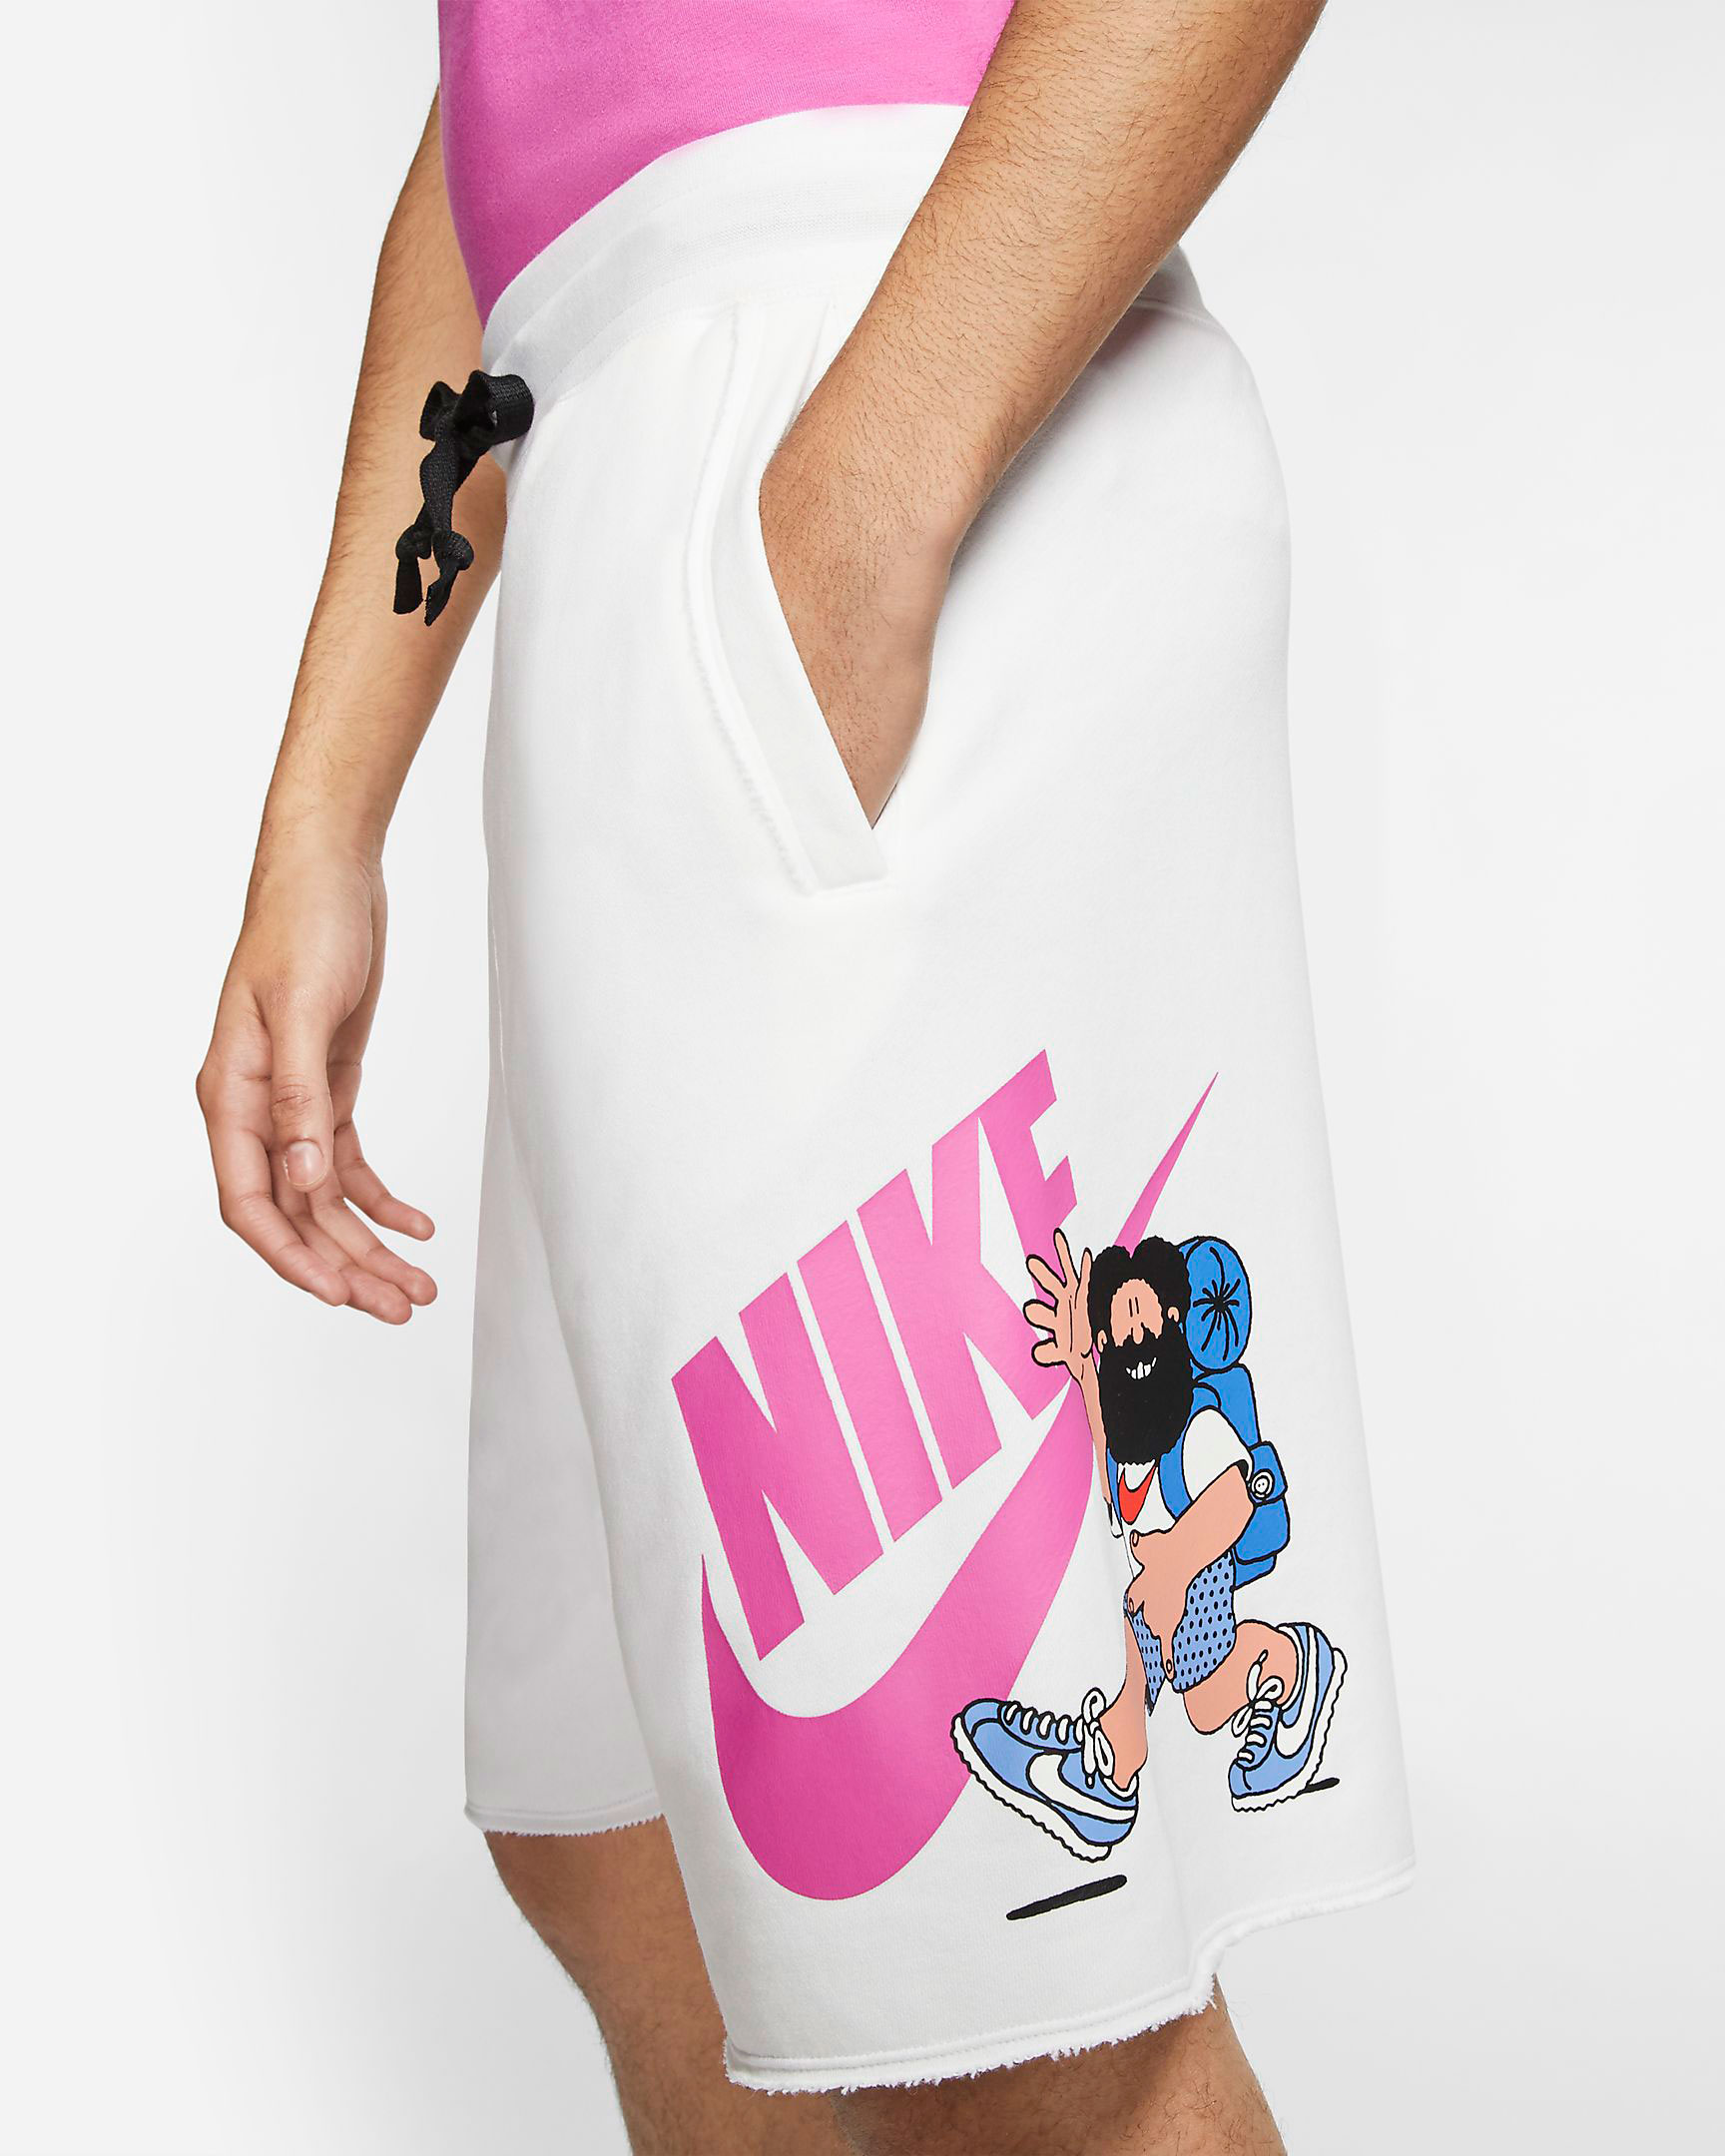 Nike Air Max 90 Hike Sneaker Outfits | Iicf